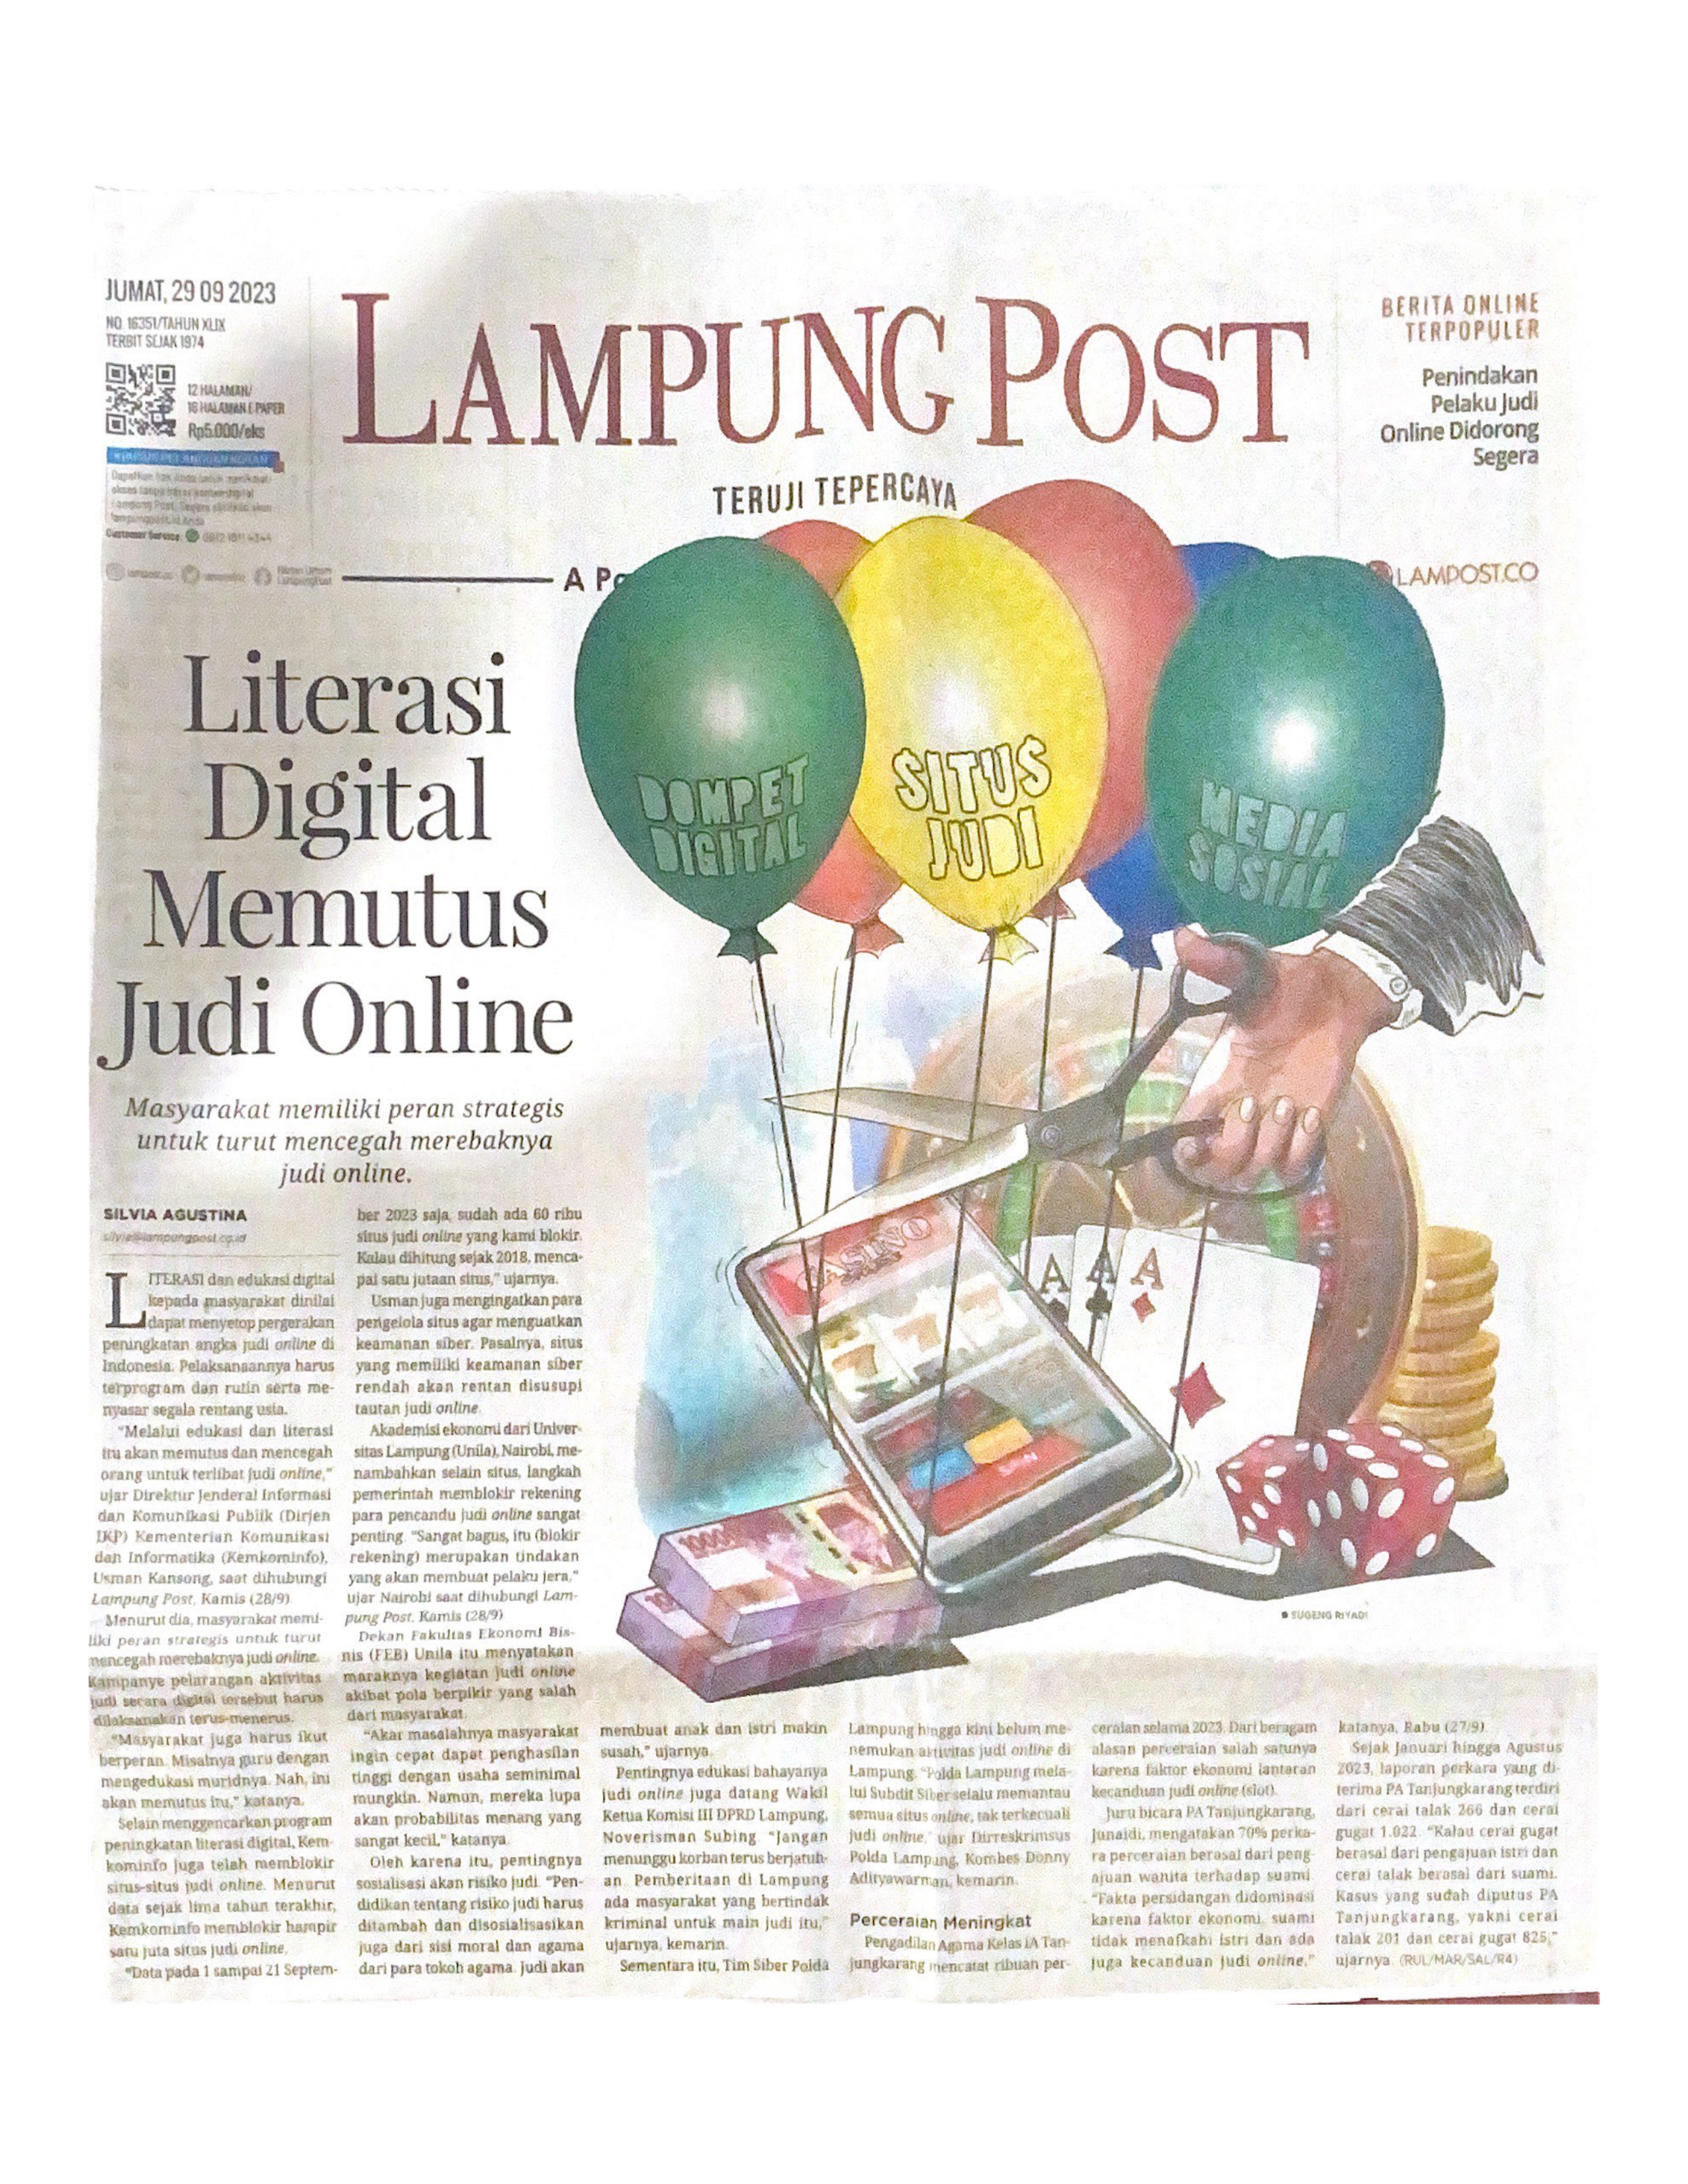 Literasi Digital Memutus Judi Online